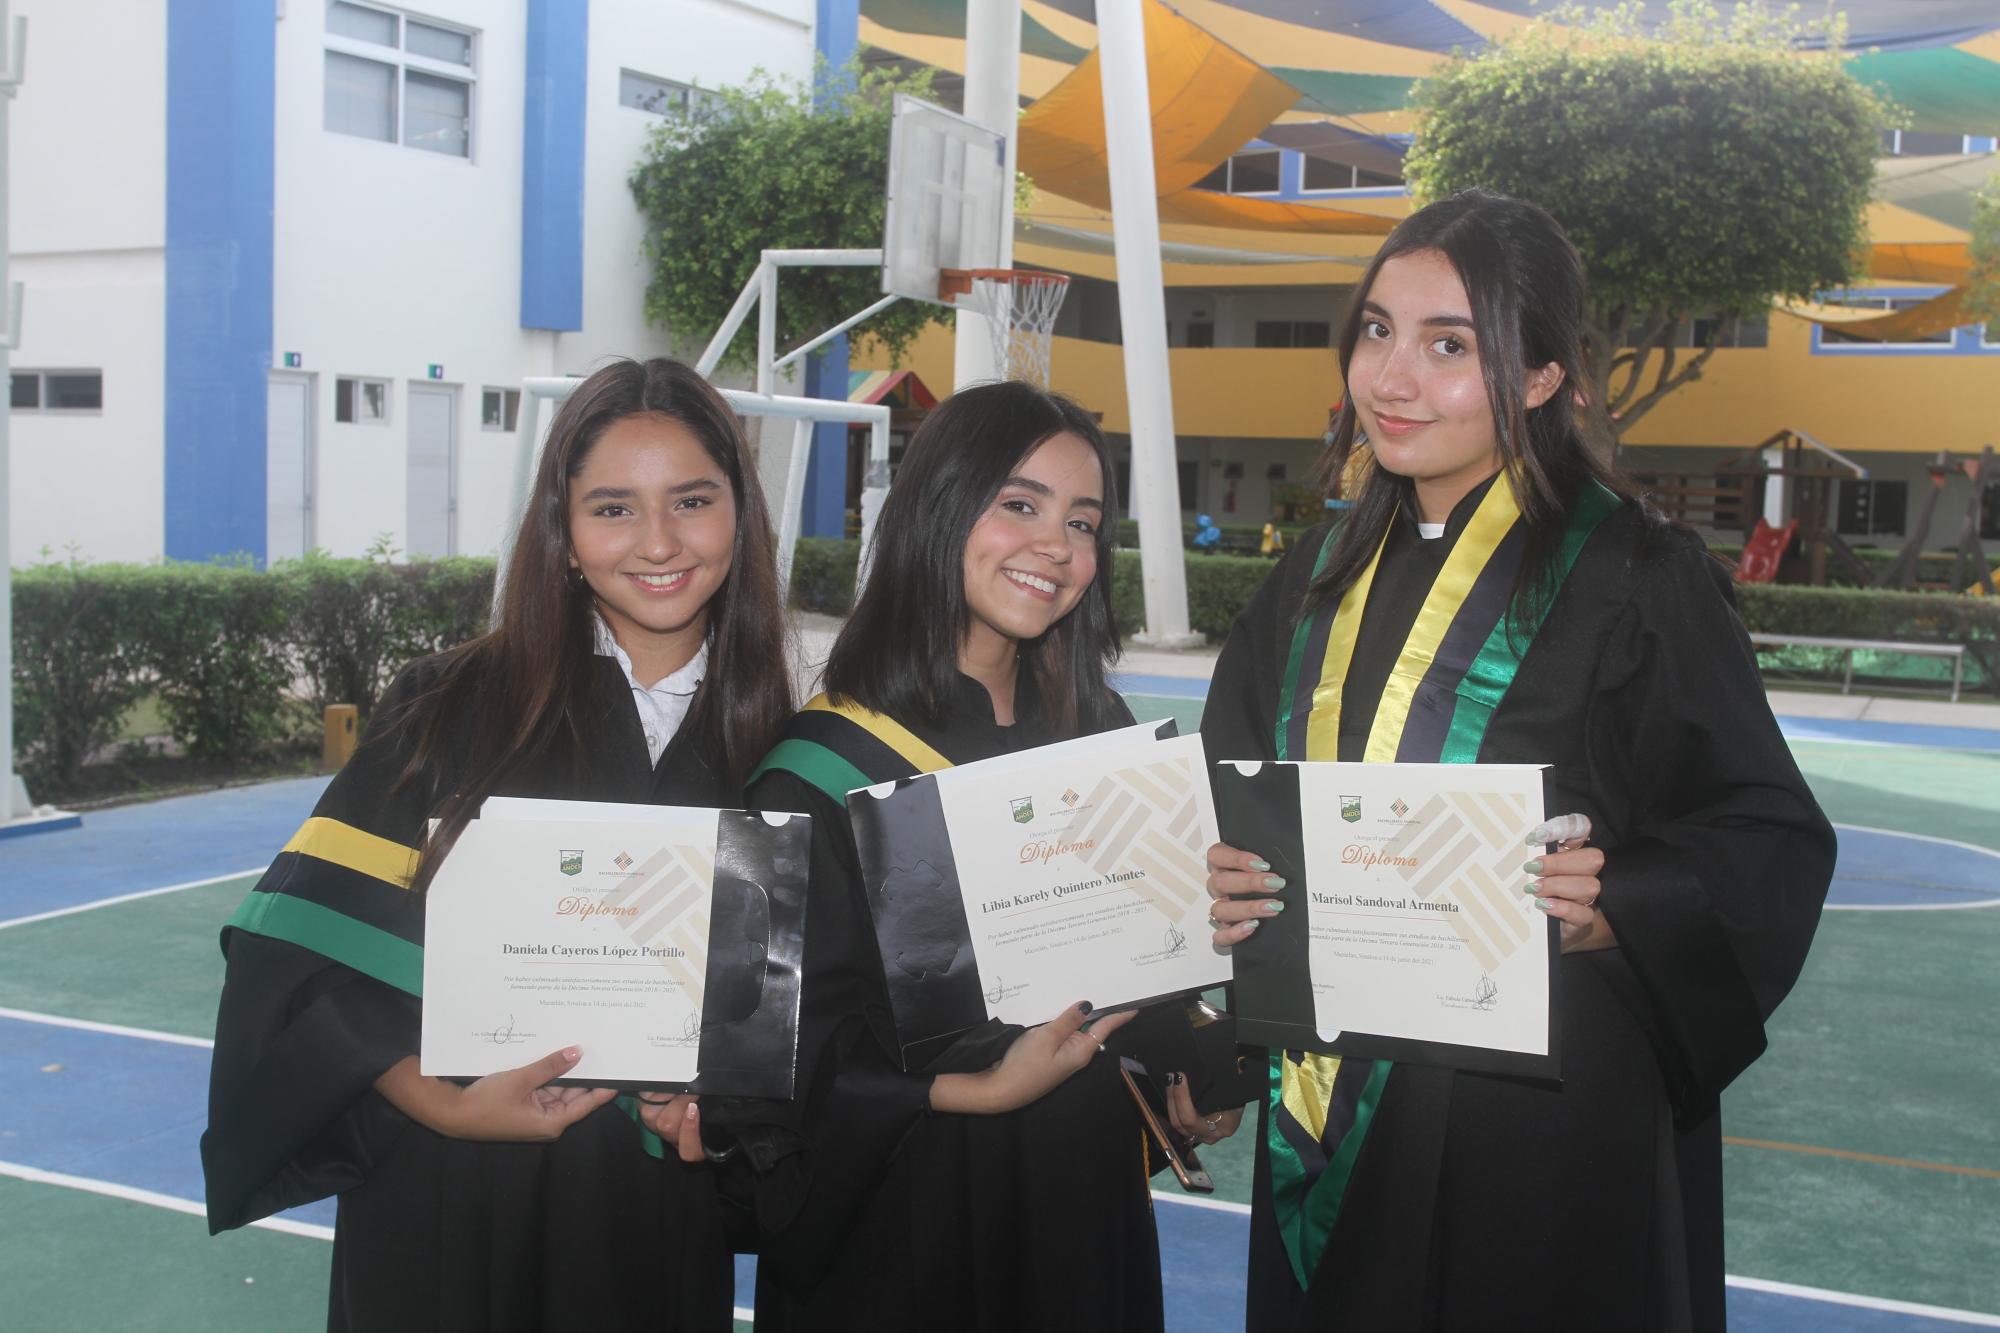 $!Daniela Cayeros López Portillo, Libia Karely Quintero Montes y Marisol Sandoval Armenta.